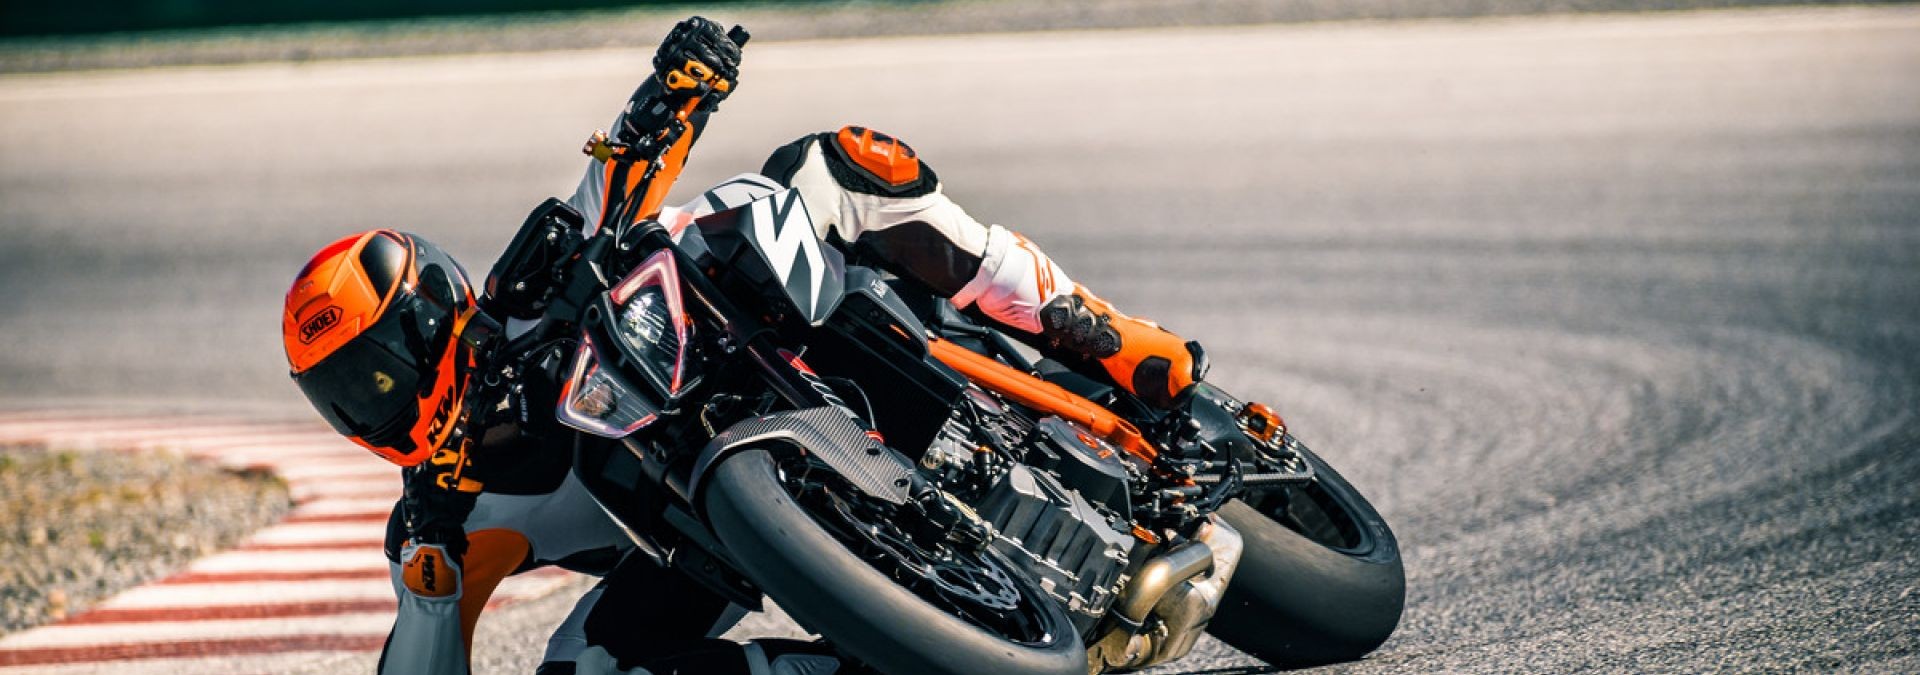  MOTORCYCLES KTM STREET MY19 2019_SUPERDUKE_R MODEL_MY19_1290SUPERDUKER_ACTION1_NP